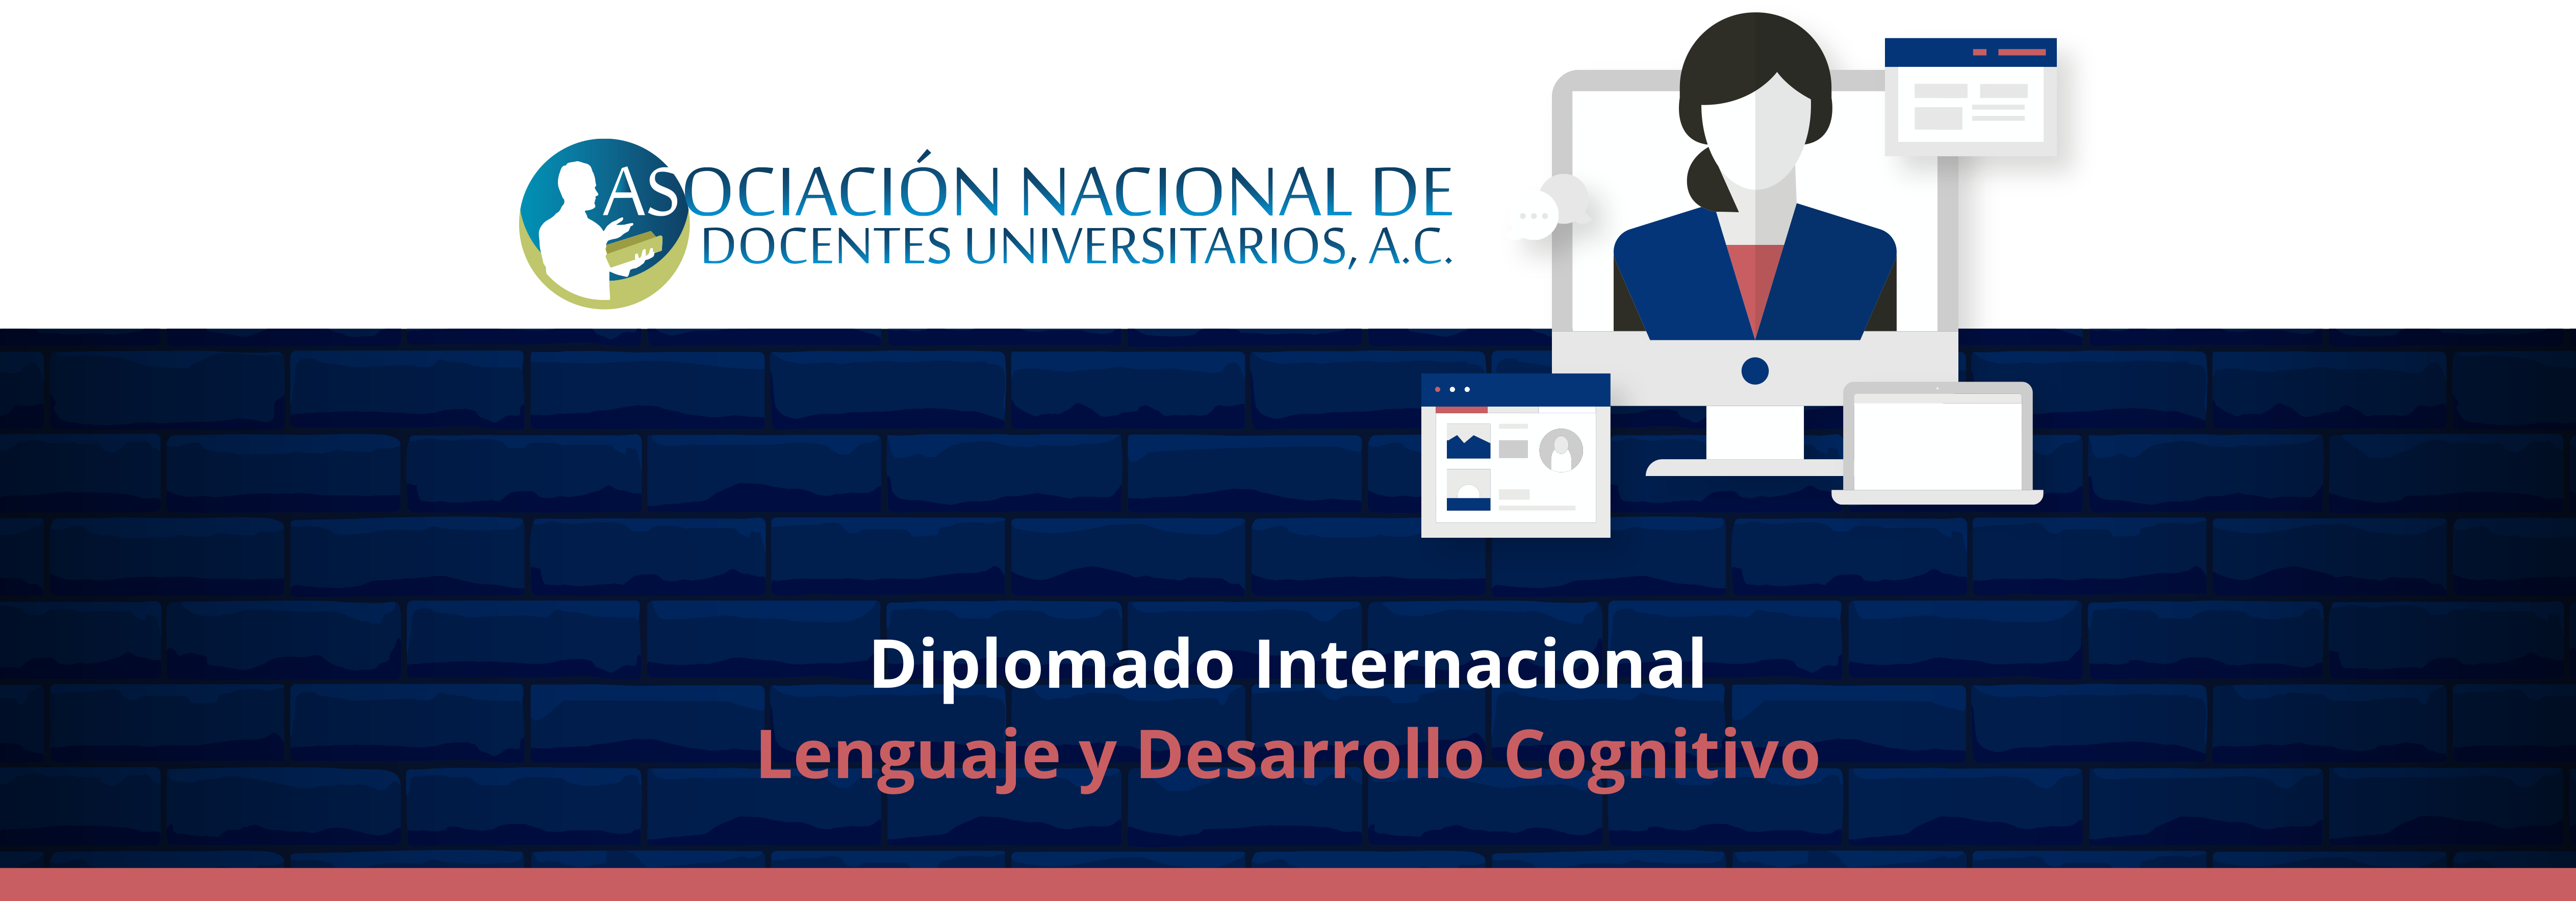 diplomado_internacional_lenguaje_desarrollo_cognitivo_encabezado.png